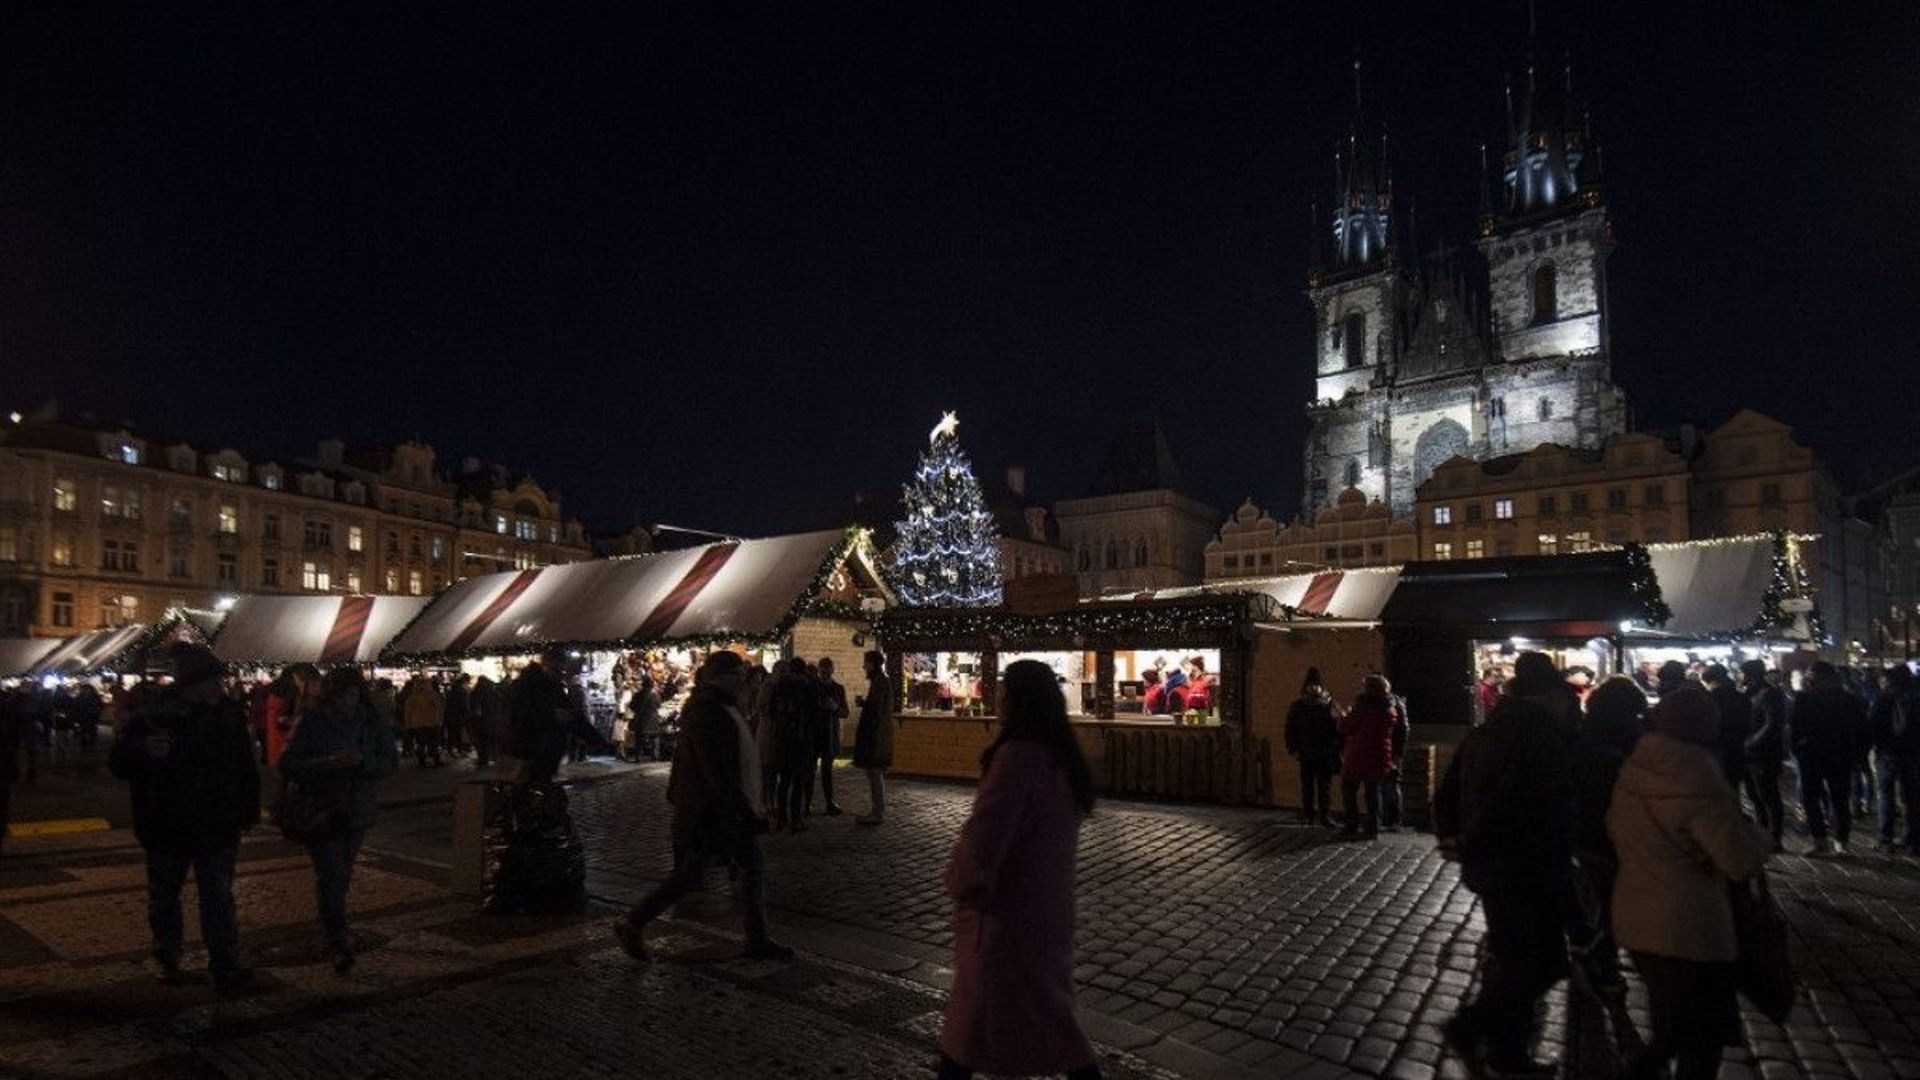 Une photo prise le 4 décembre 2019 montre des personnes passant devant des stands sur un marché de Noël sur la place de la vieille ville de la capitale tchèque à Prague.